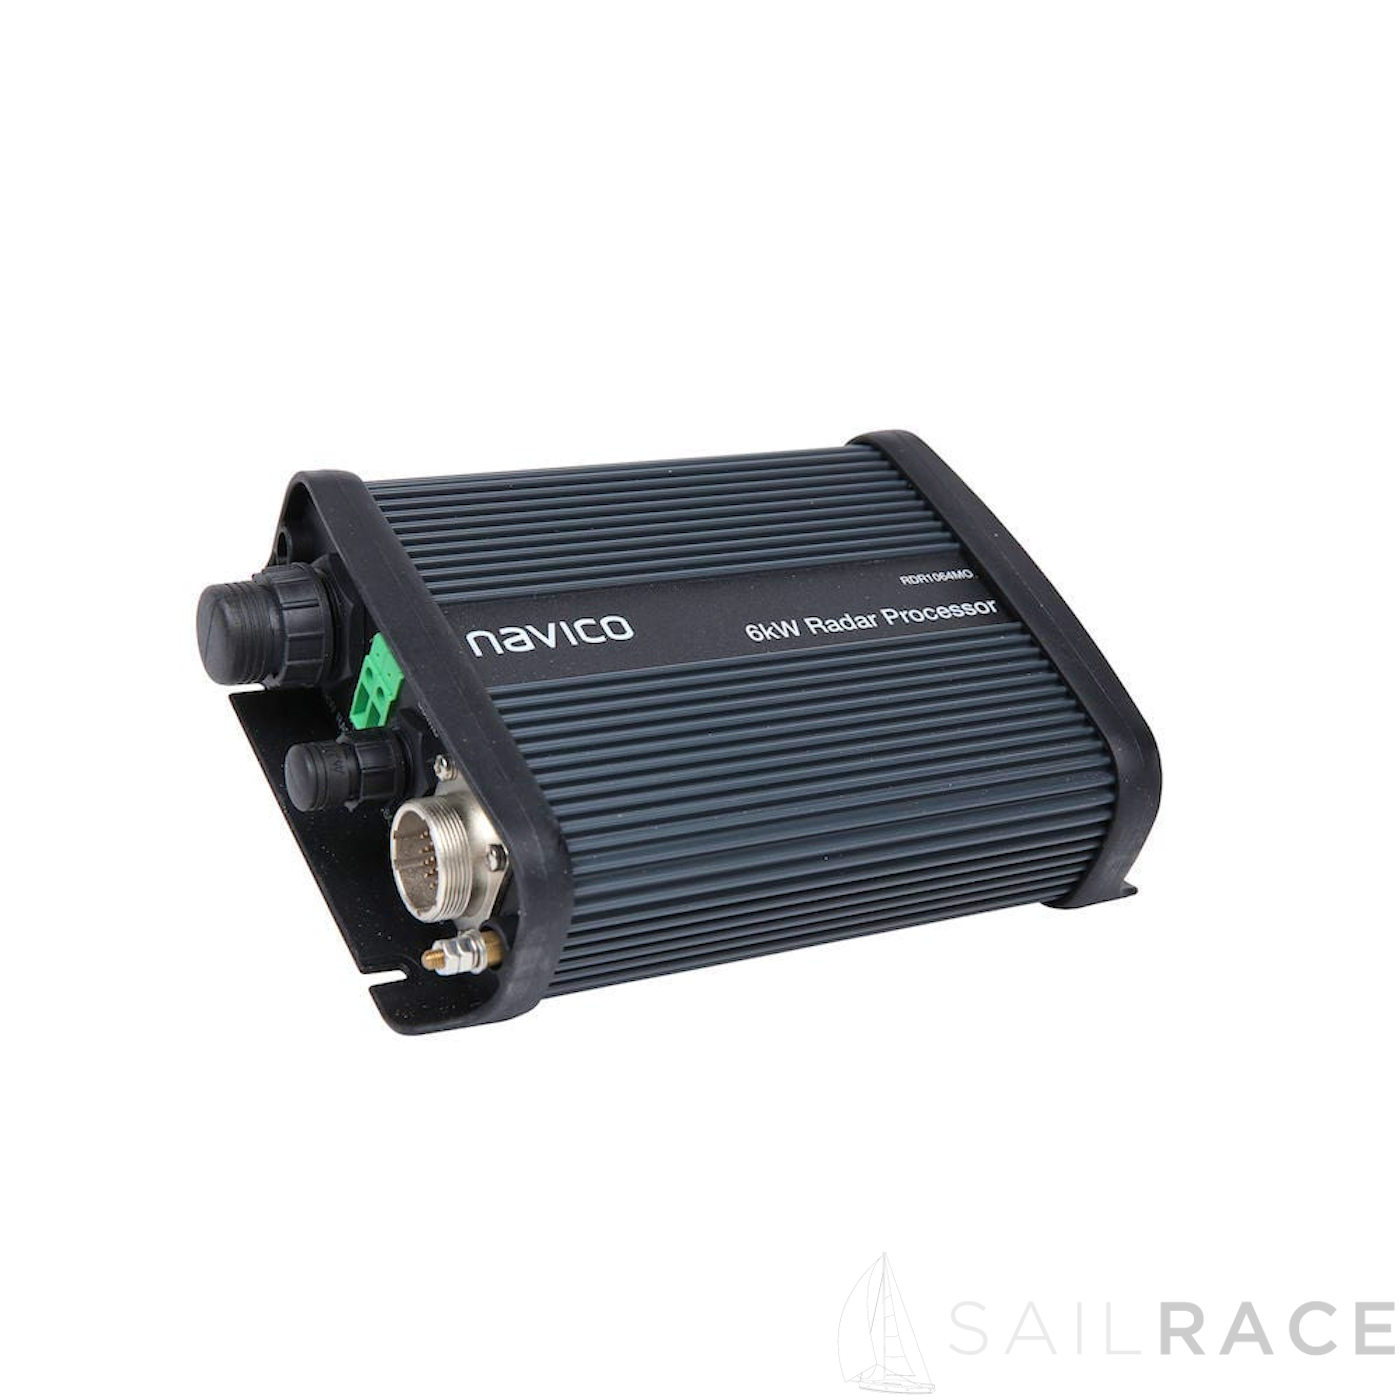 Pack processeur boîte noire pour radar Simrad 6kW (WINCE) - image 2